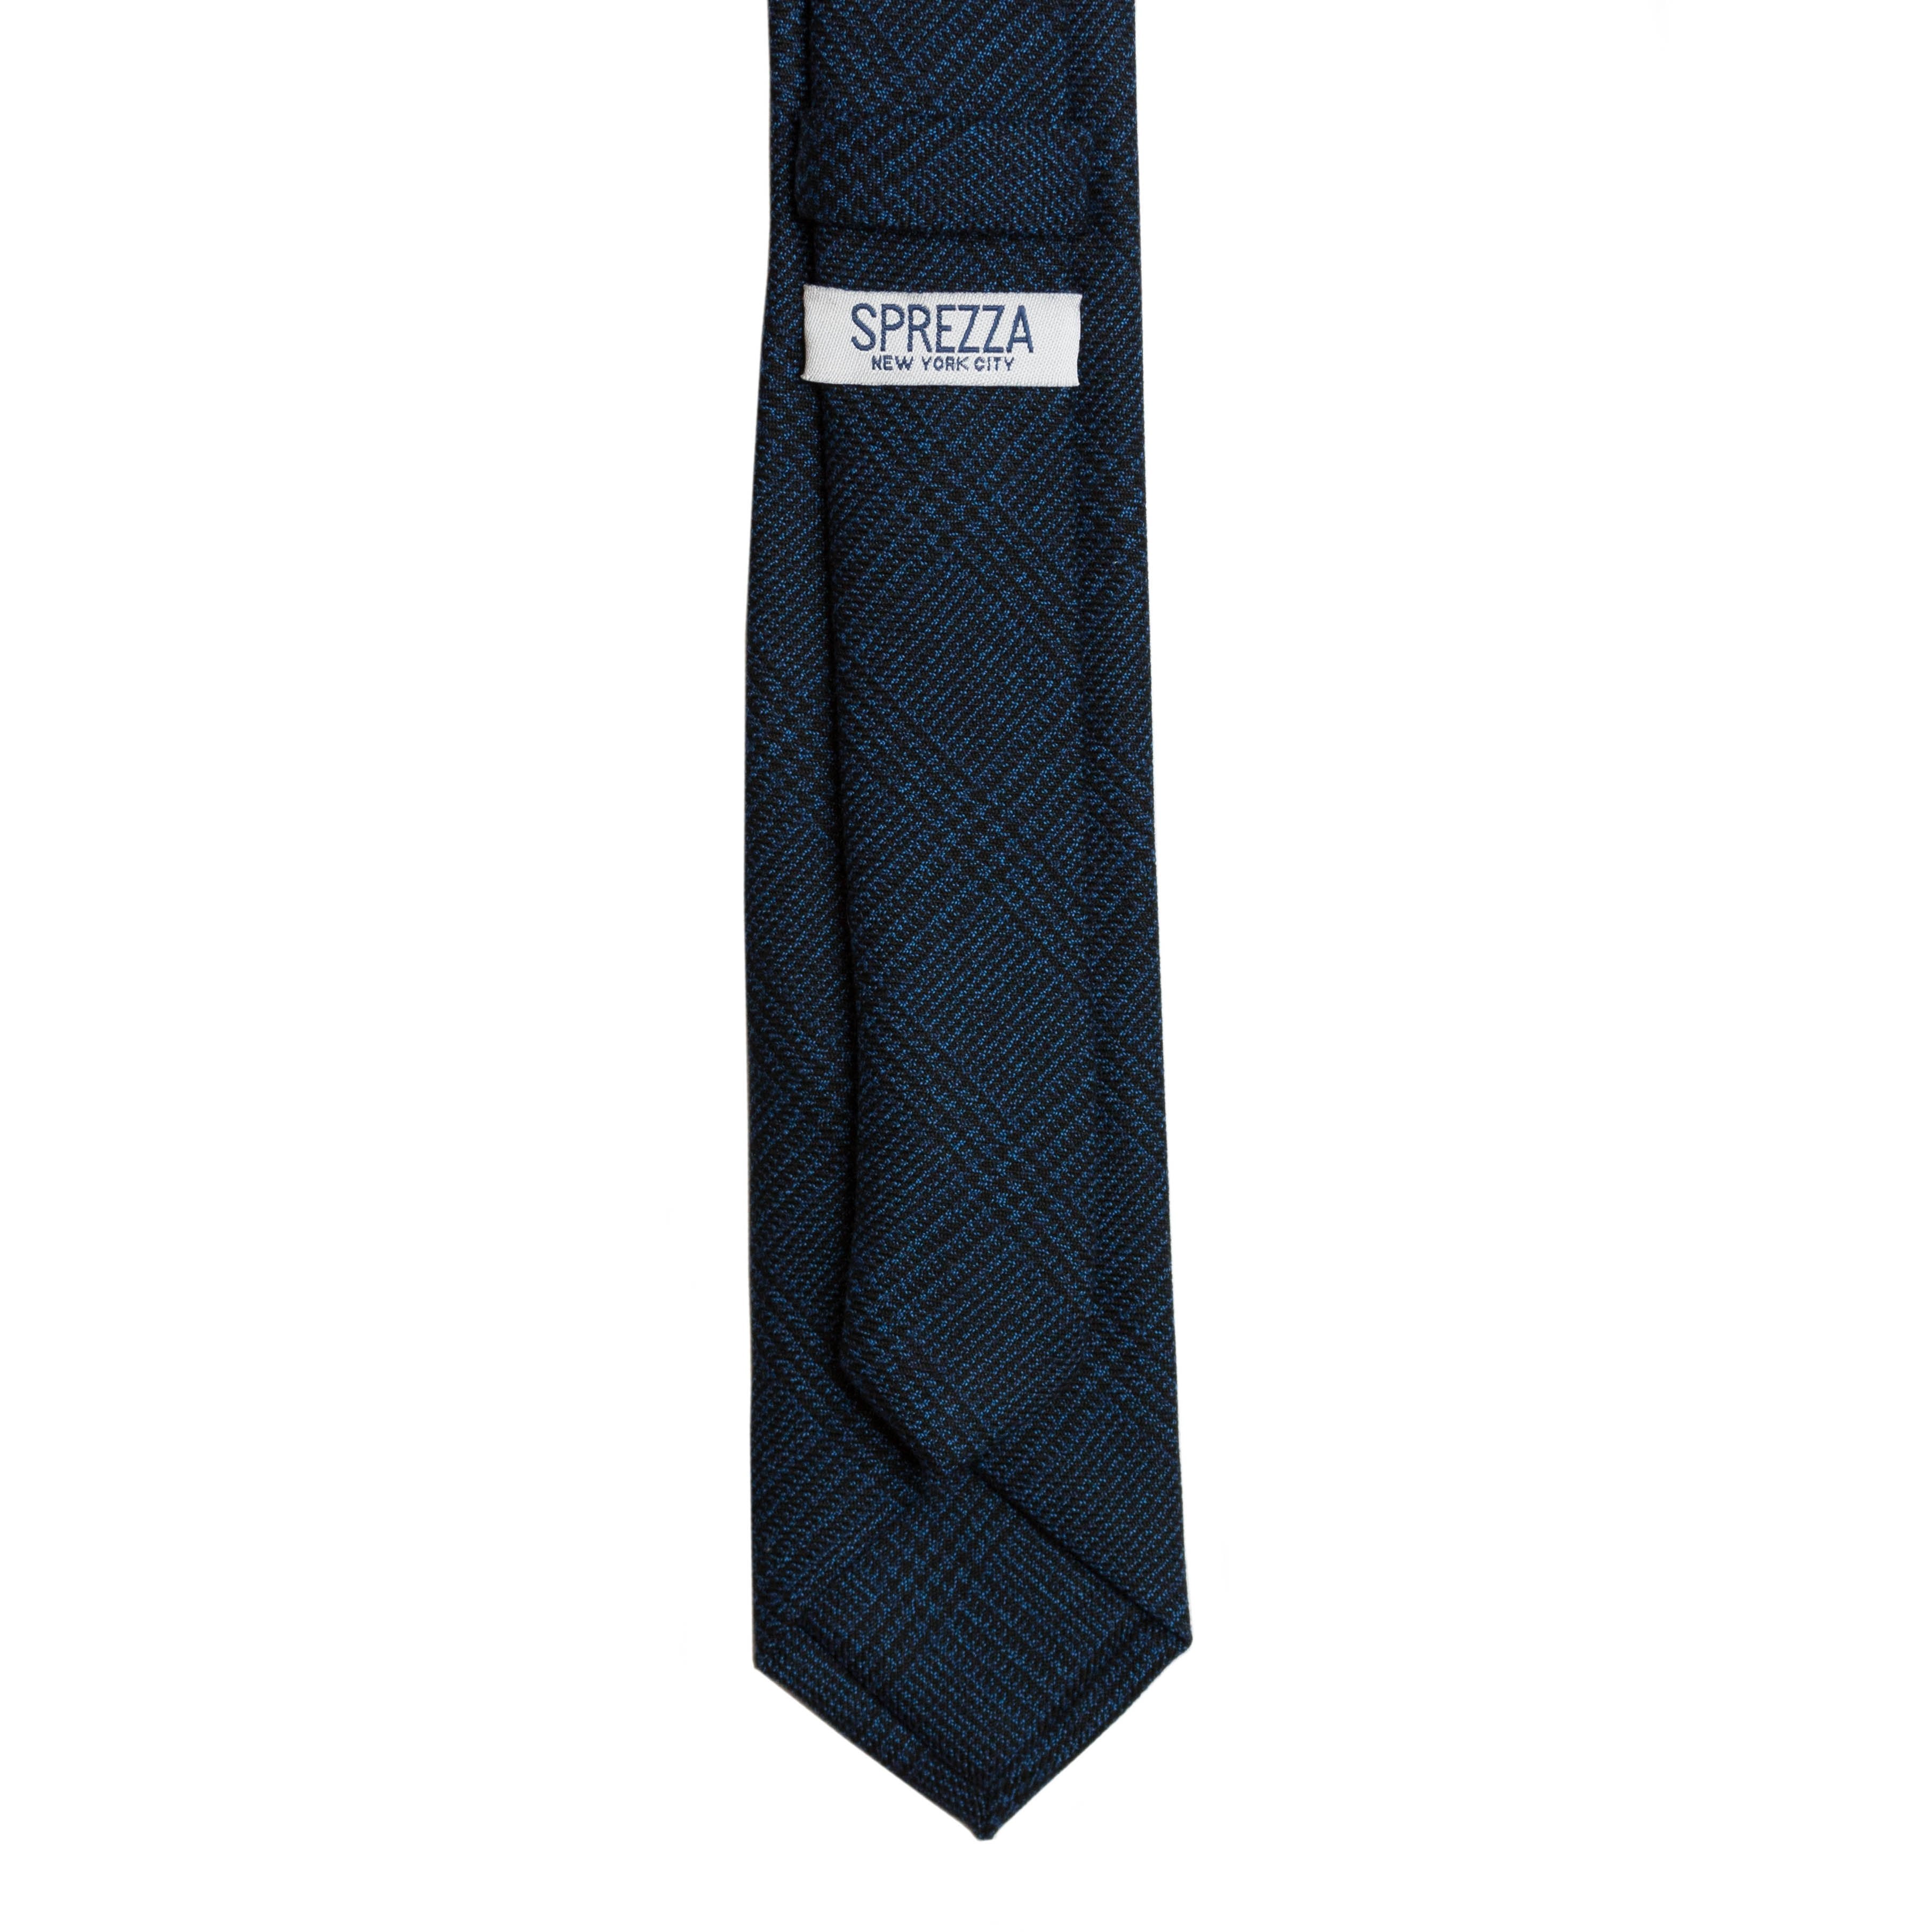 Indigo Plaid Tie (Wall Street) - SprezzaBox